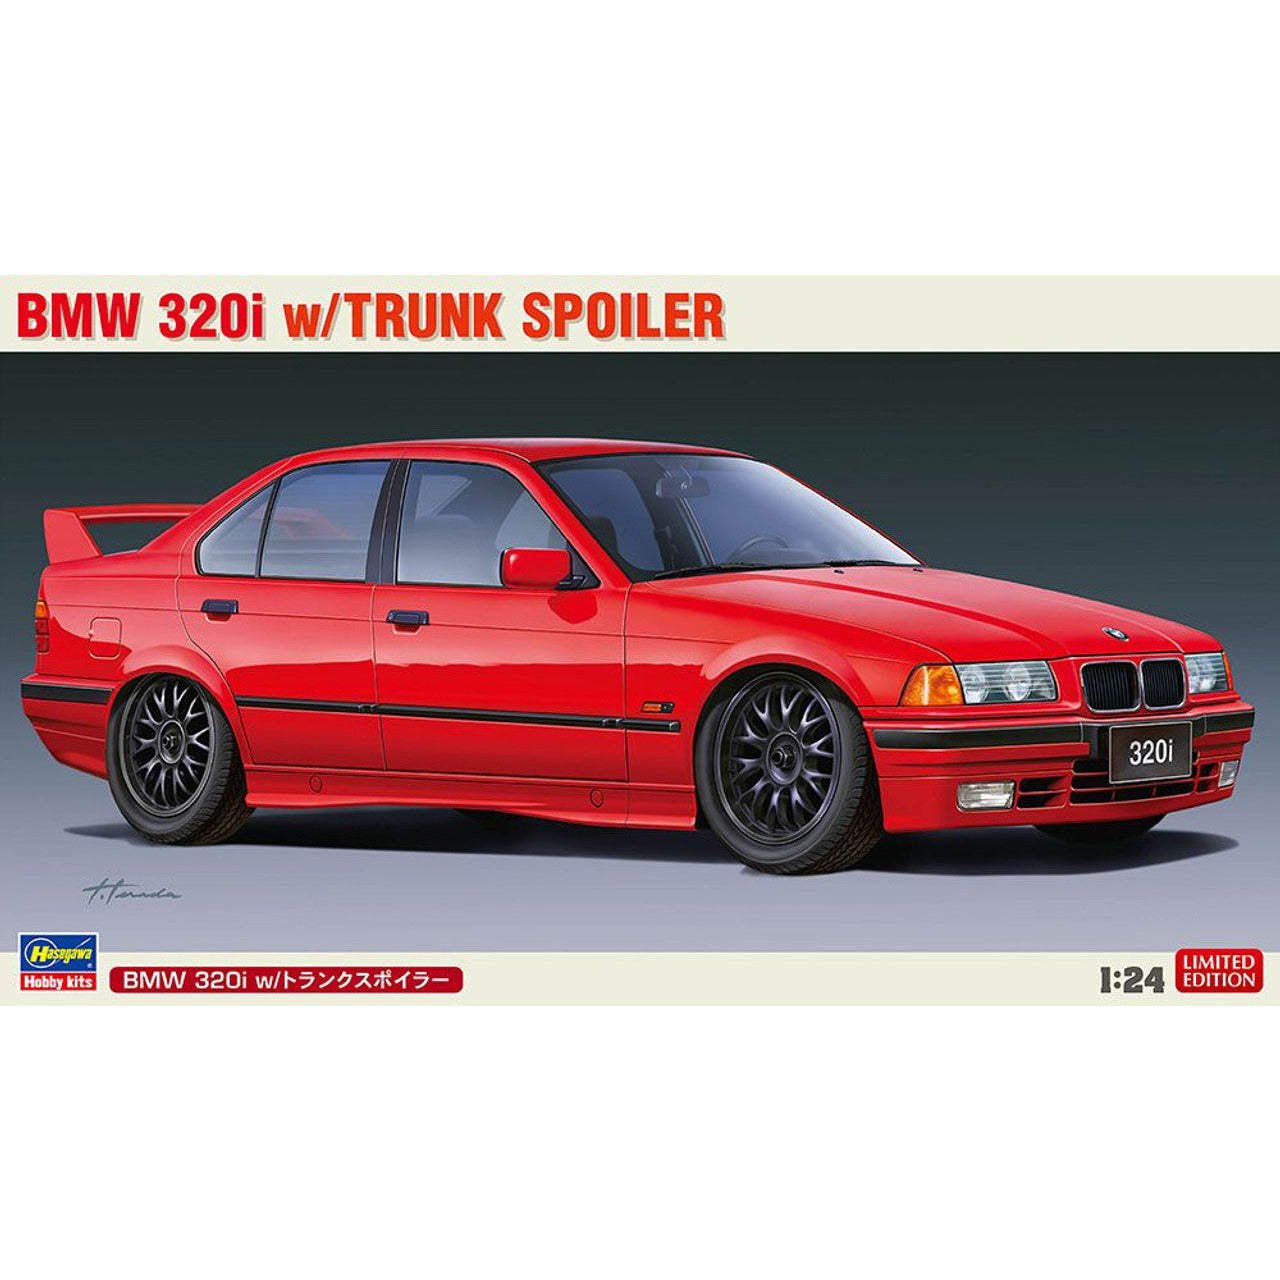 BMW 320i w/Trunk Spoiler 1/24 by Hasegawa